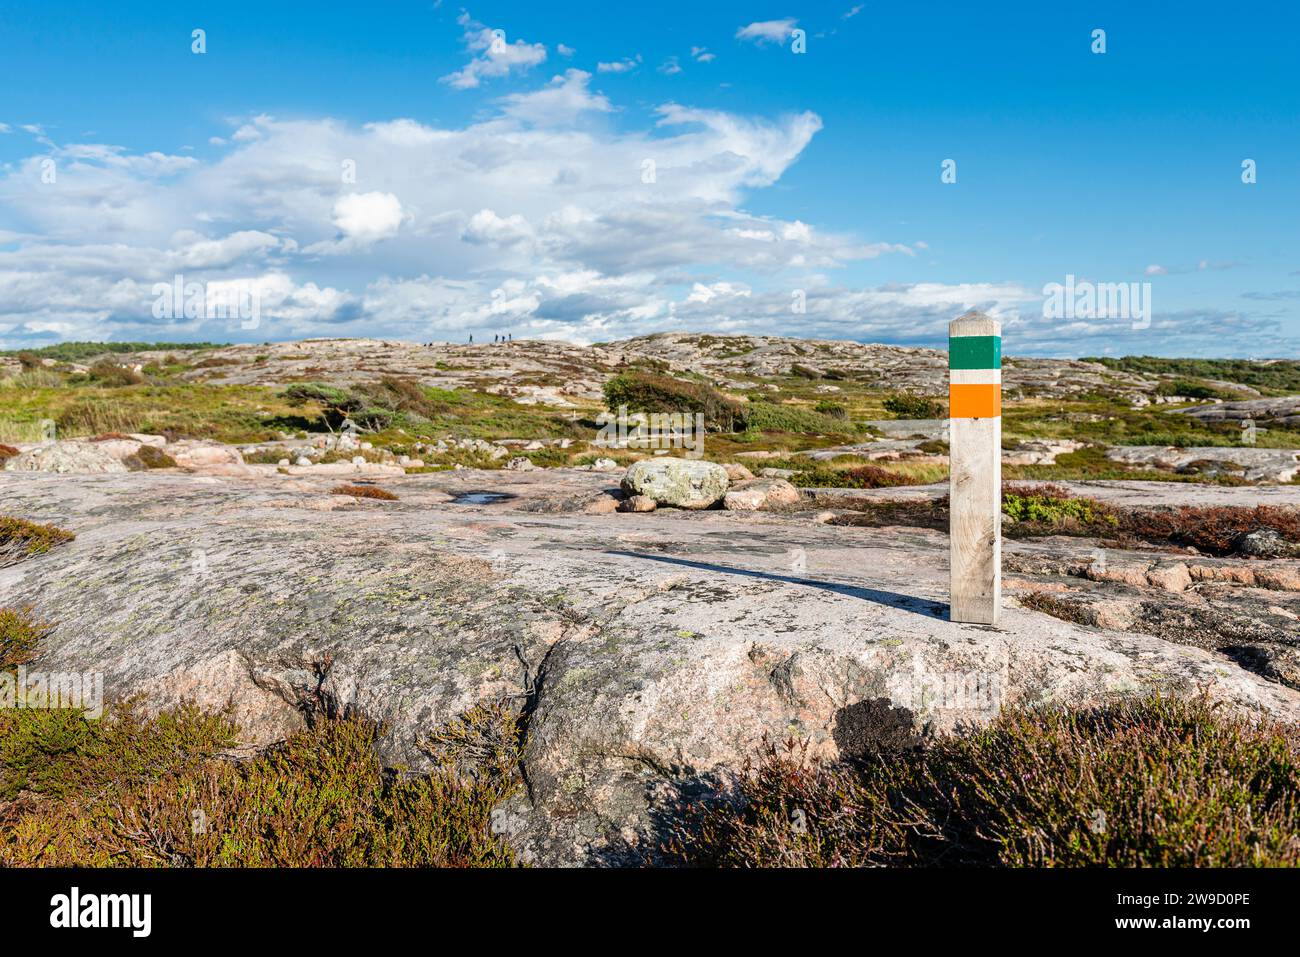 Sentiero escursionistico sulle rocce e attraverso la campagna del libro nel Parco naturale Tjurpannan nell'arcipelago della costa occidentale della Svezia, Bohuslän, Tanumshede Foto Stock